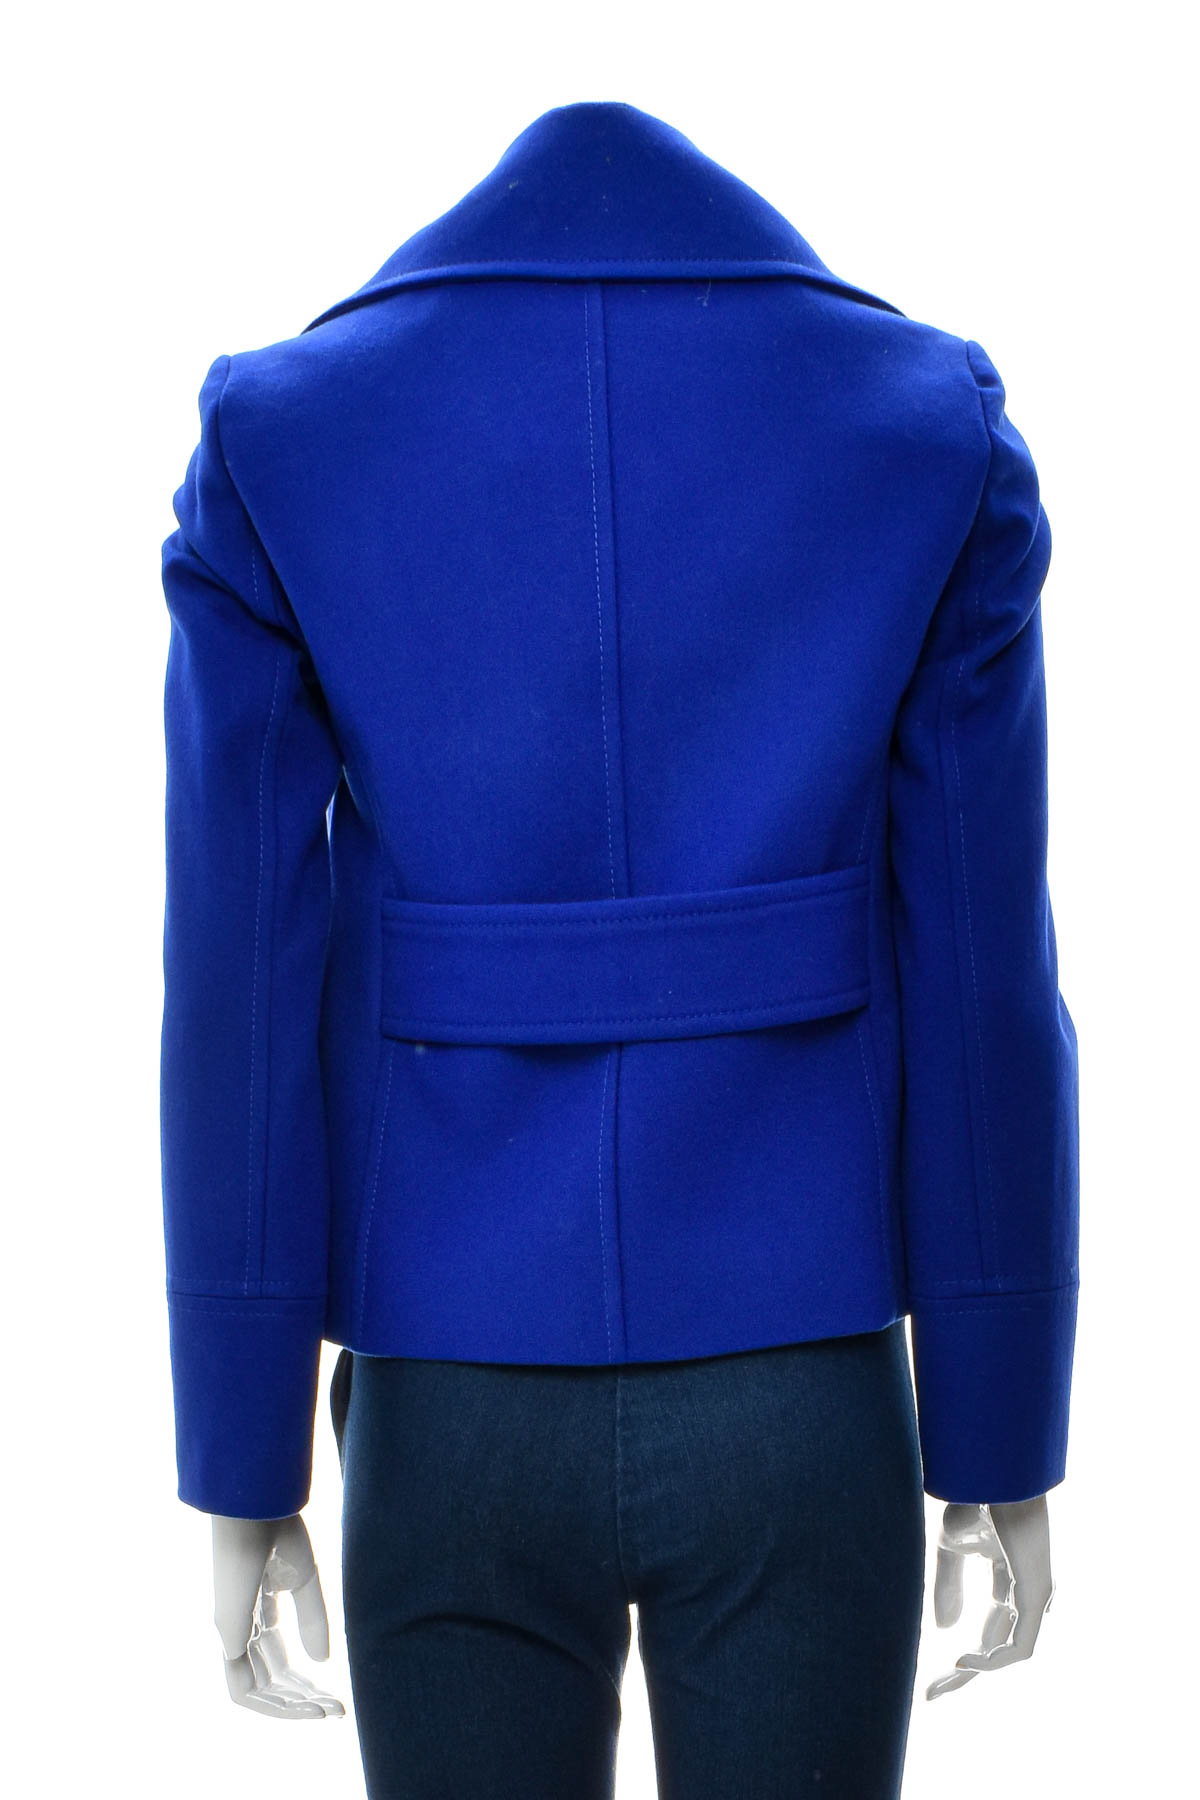 Women's coat - Max&Co. - 1